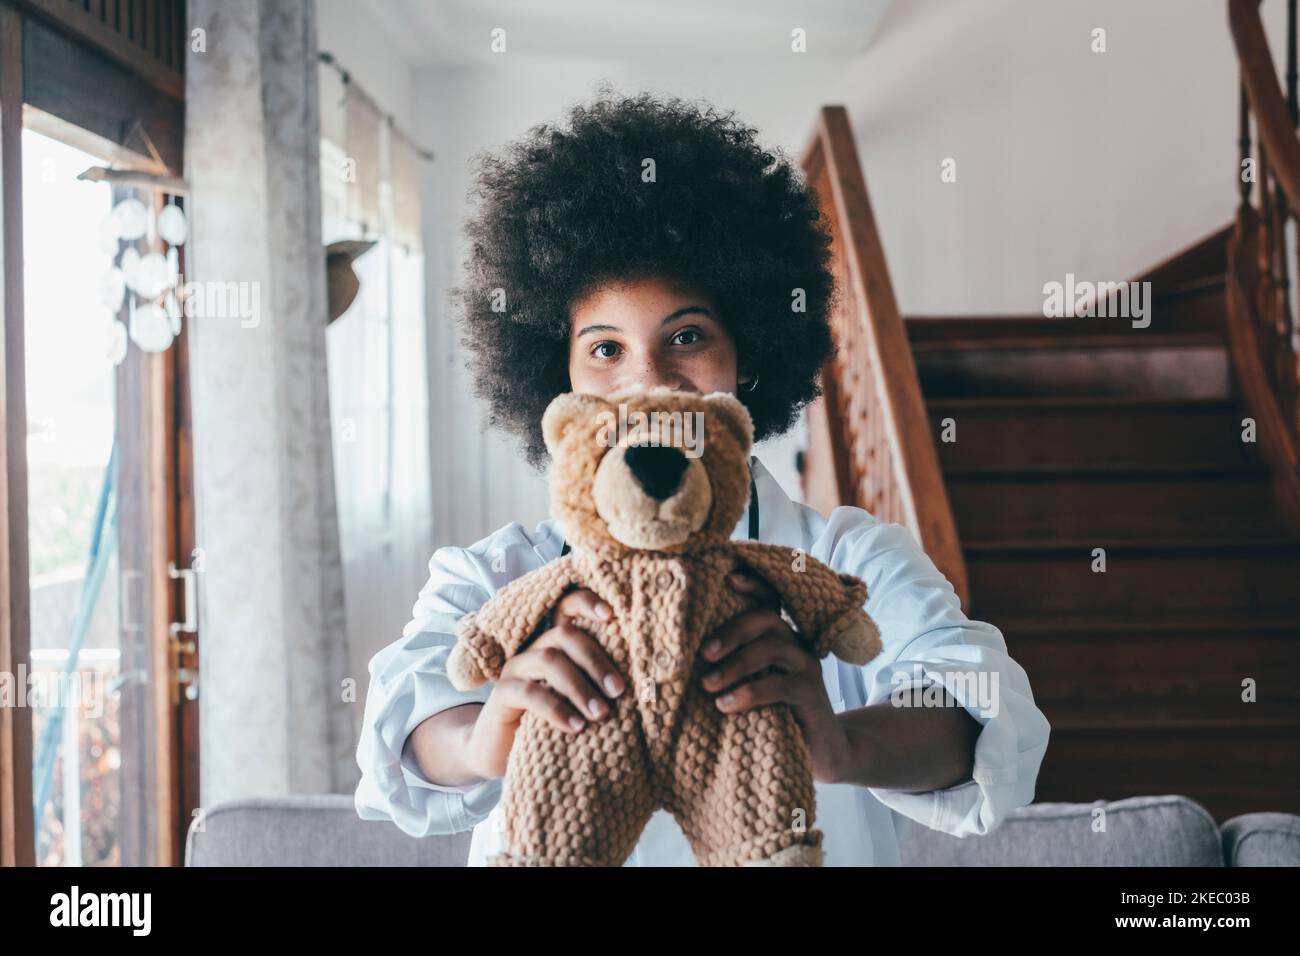 Portrait de la jeune femme afro-américaine infirmière en uniforme médical tenant un jouet bourré montrant l'amour des soins à la petite patiente, heureuse femme médecin pédiatre posant avec l'ours en peluche dans l'hôpital ou la clinique Banque D'Images